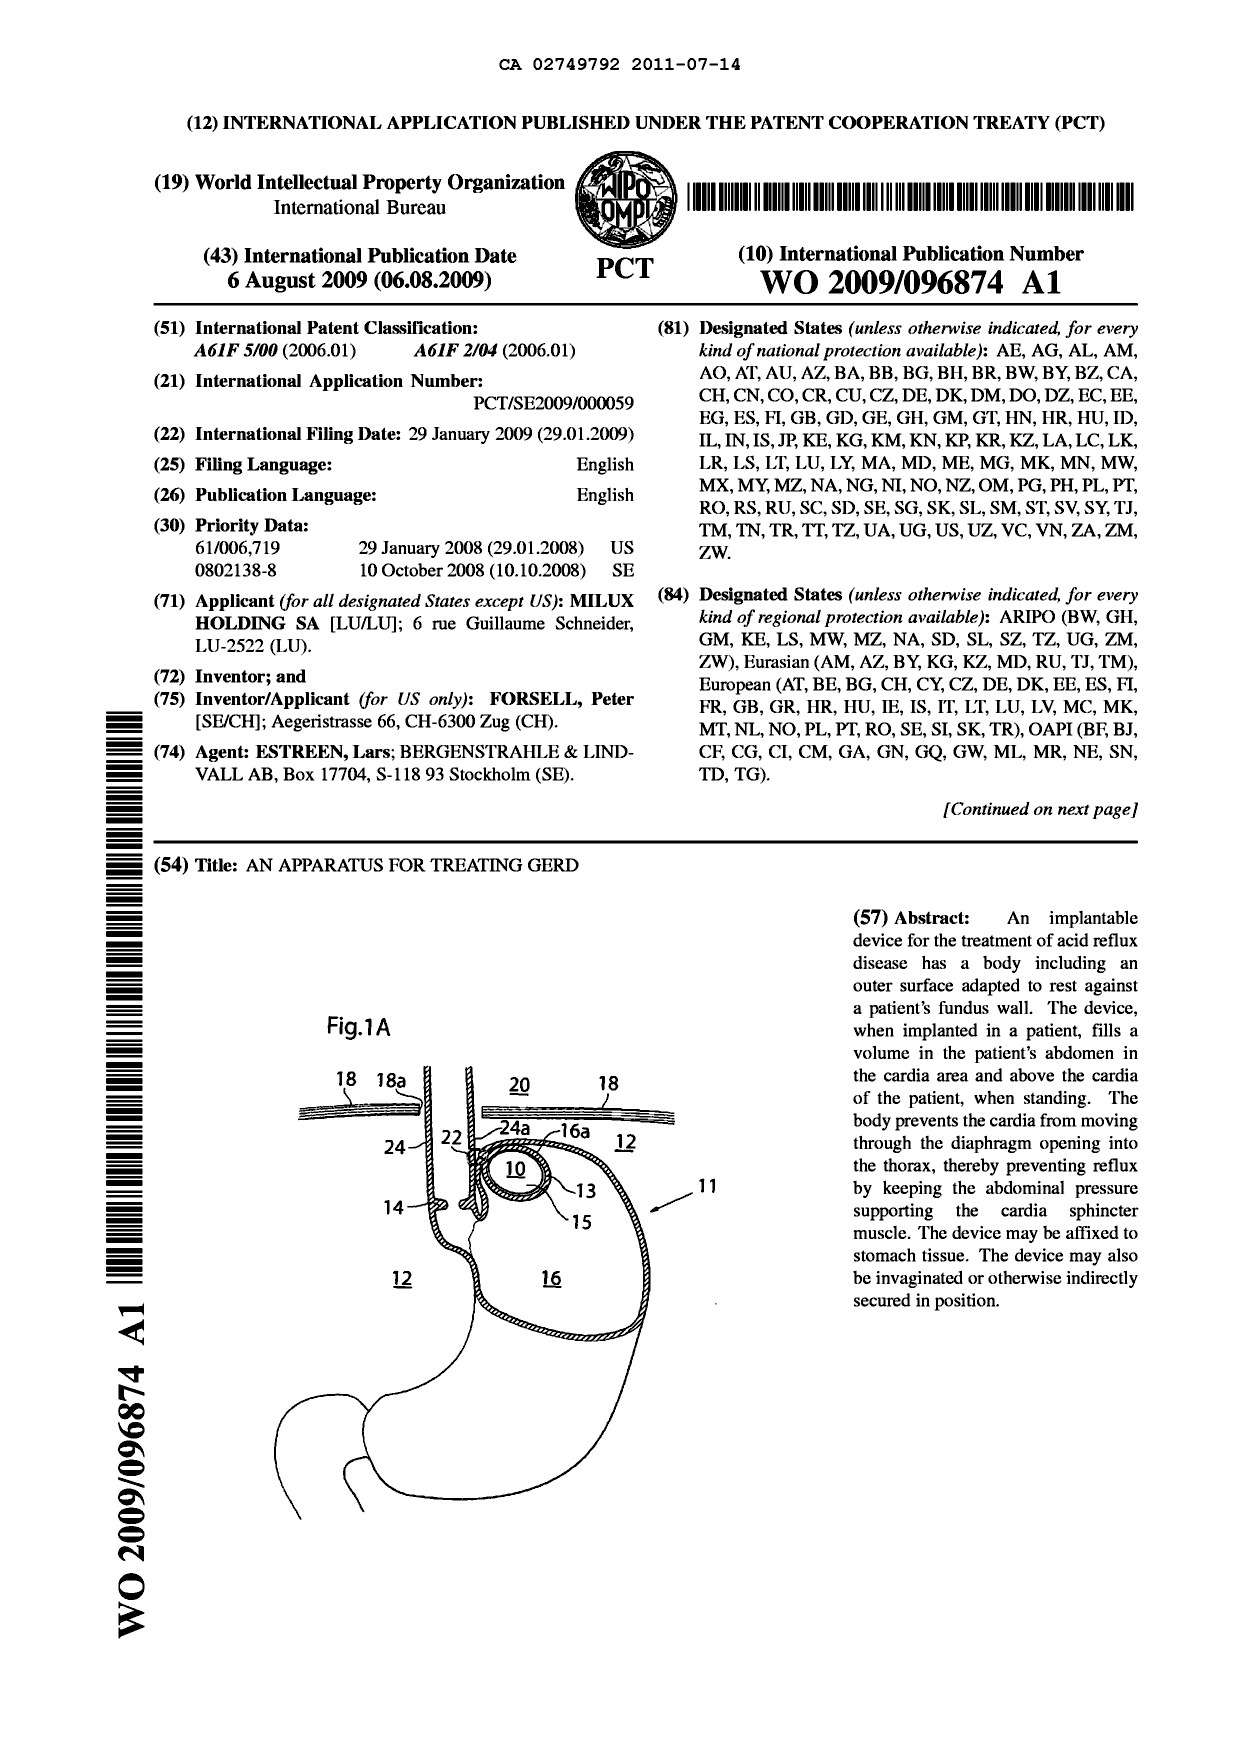 Document de brevet canadien 2749792. Abrégé 20110714. Image 1 de 2